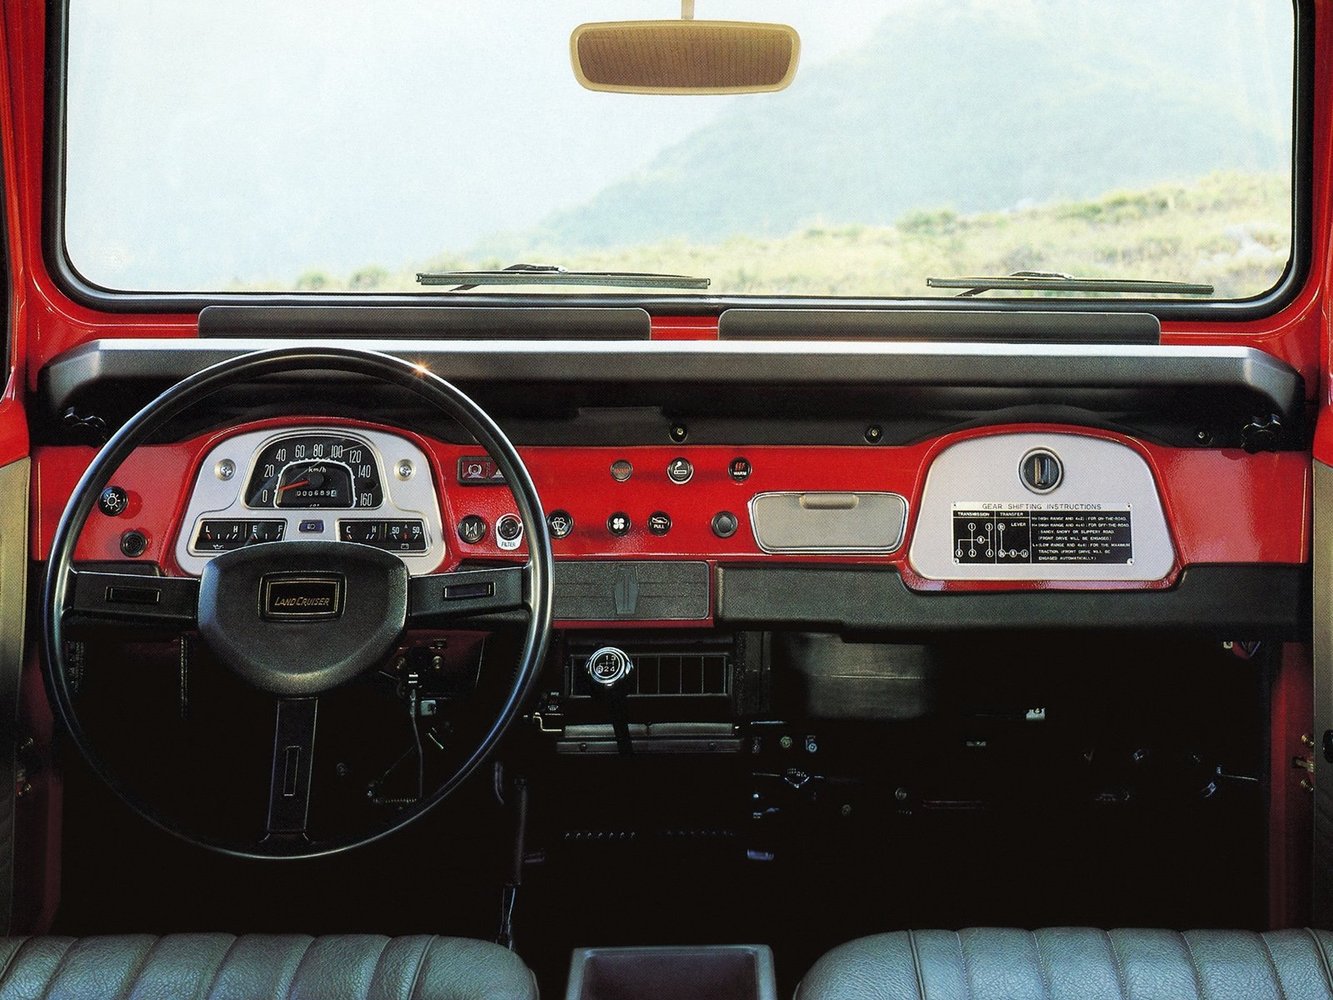 внедорожник Toyota Land Cruiser 1960 - 1984г выпуска модификация 3.0 MT (80 л.с.)